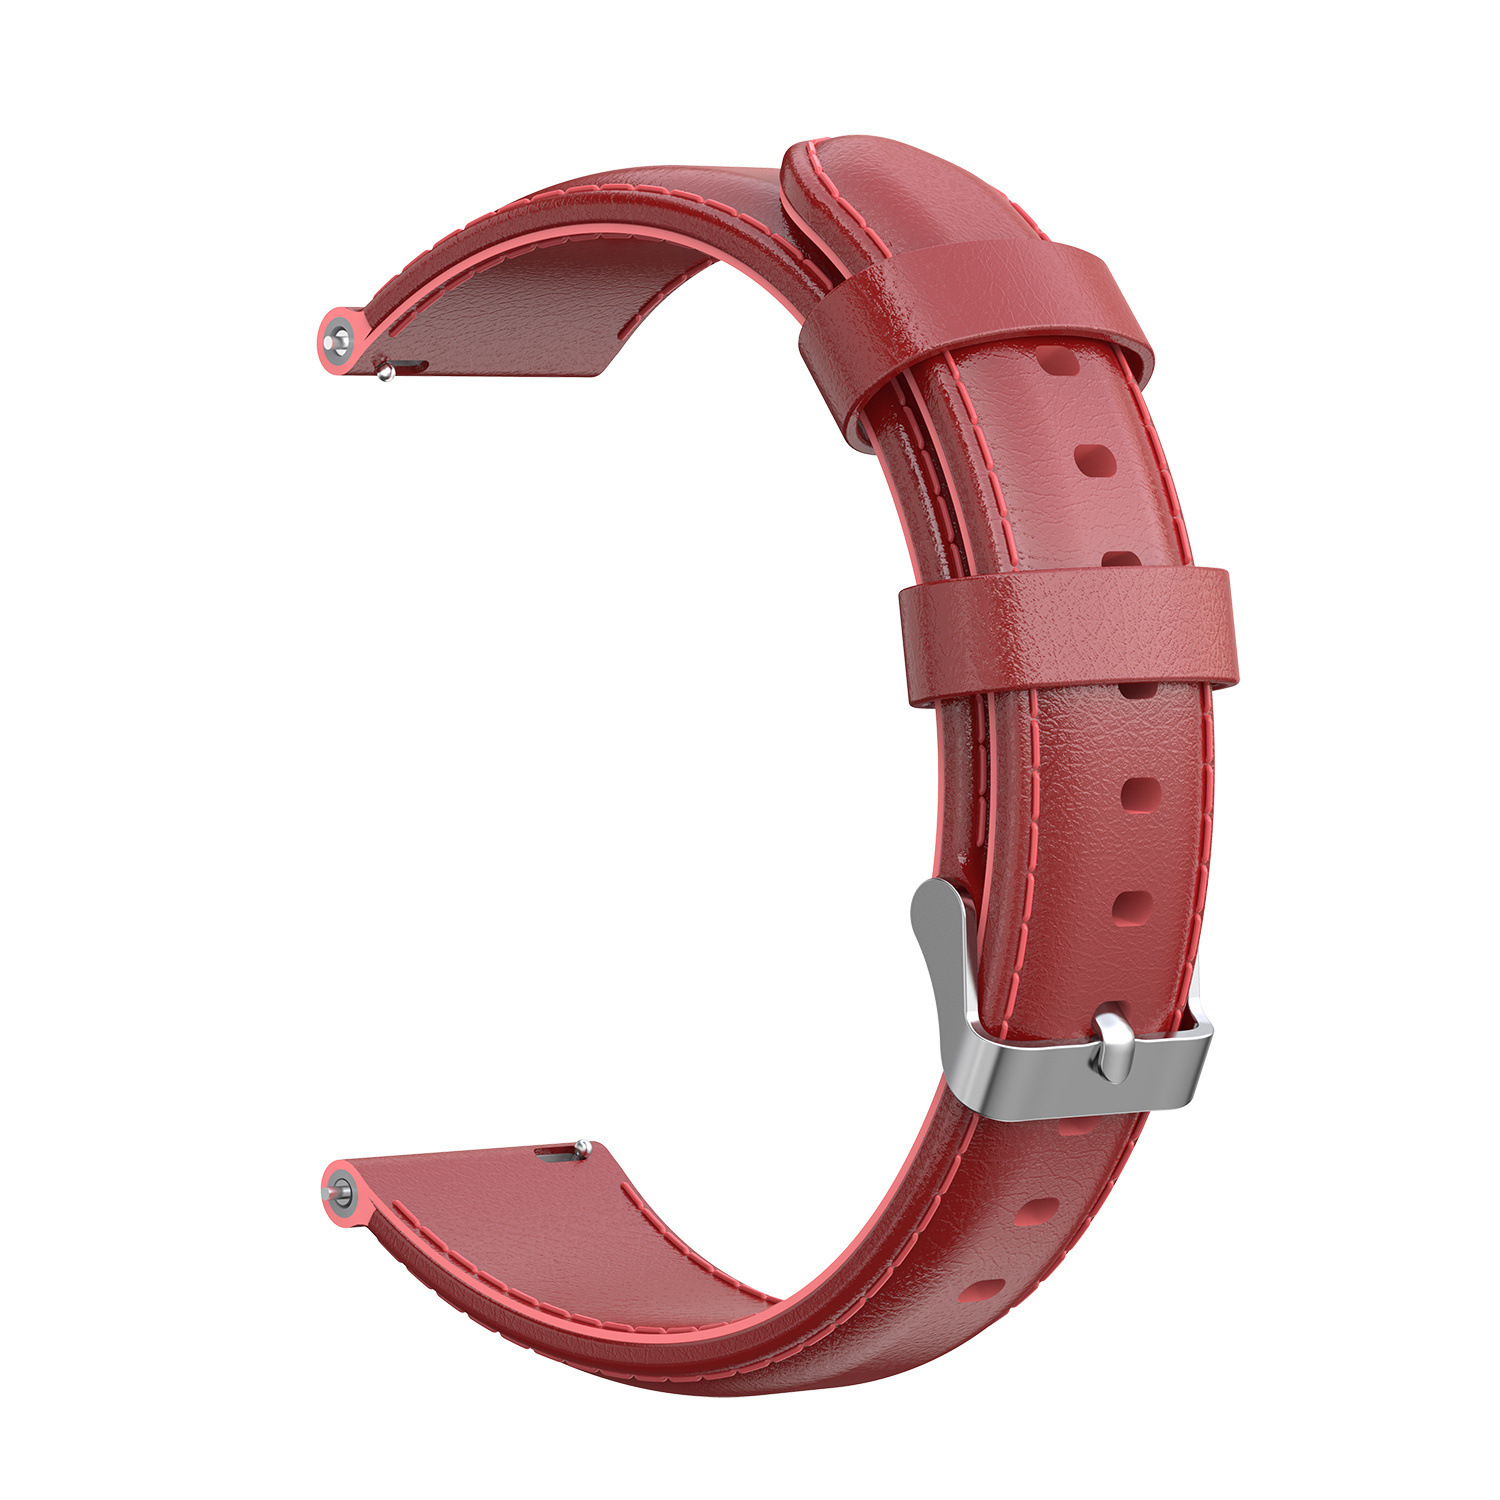 Cinturino in pelle per Huawei Watch GT - rosso